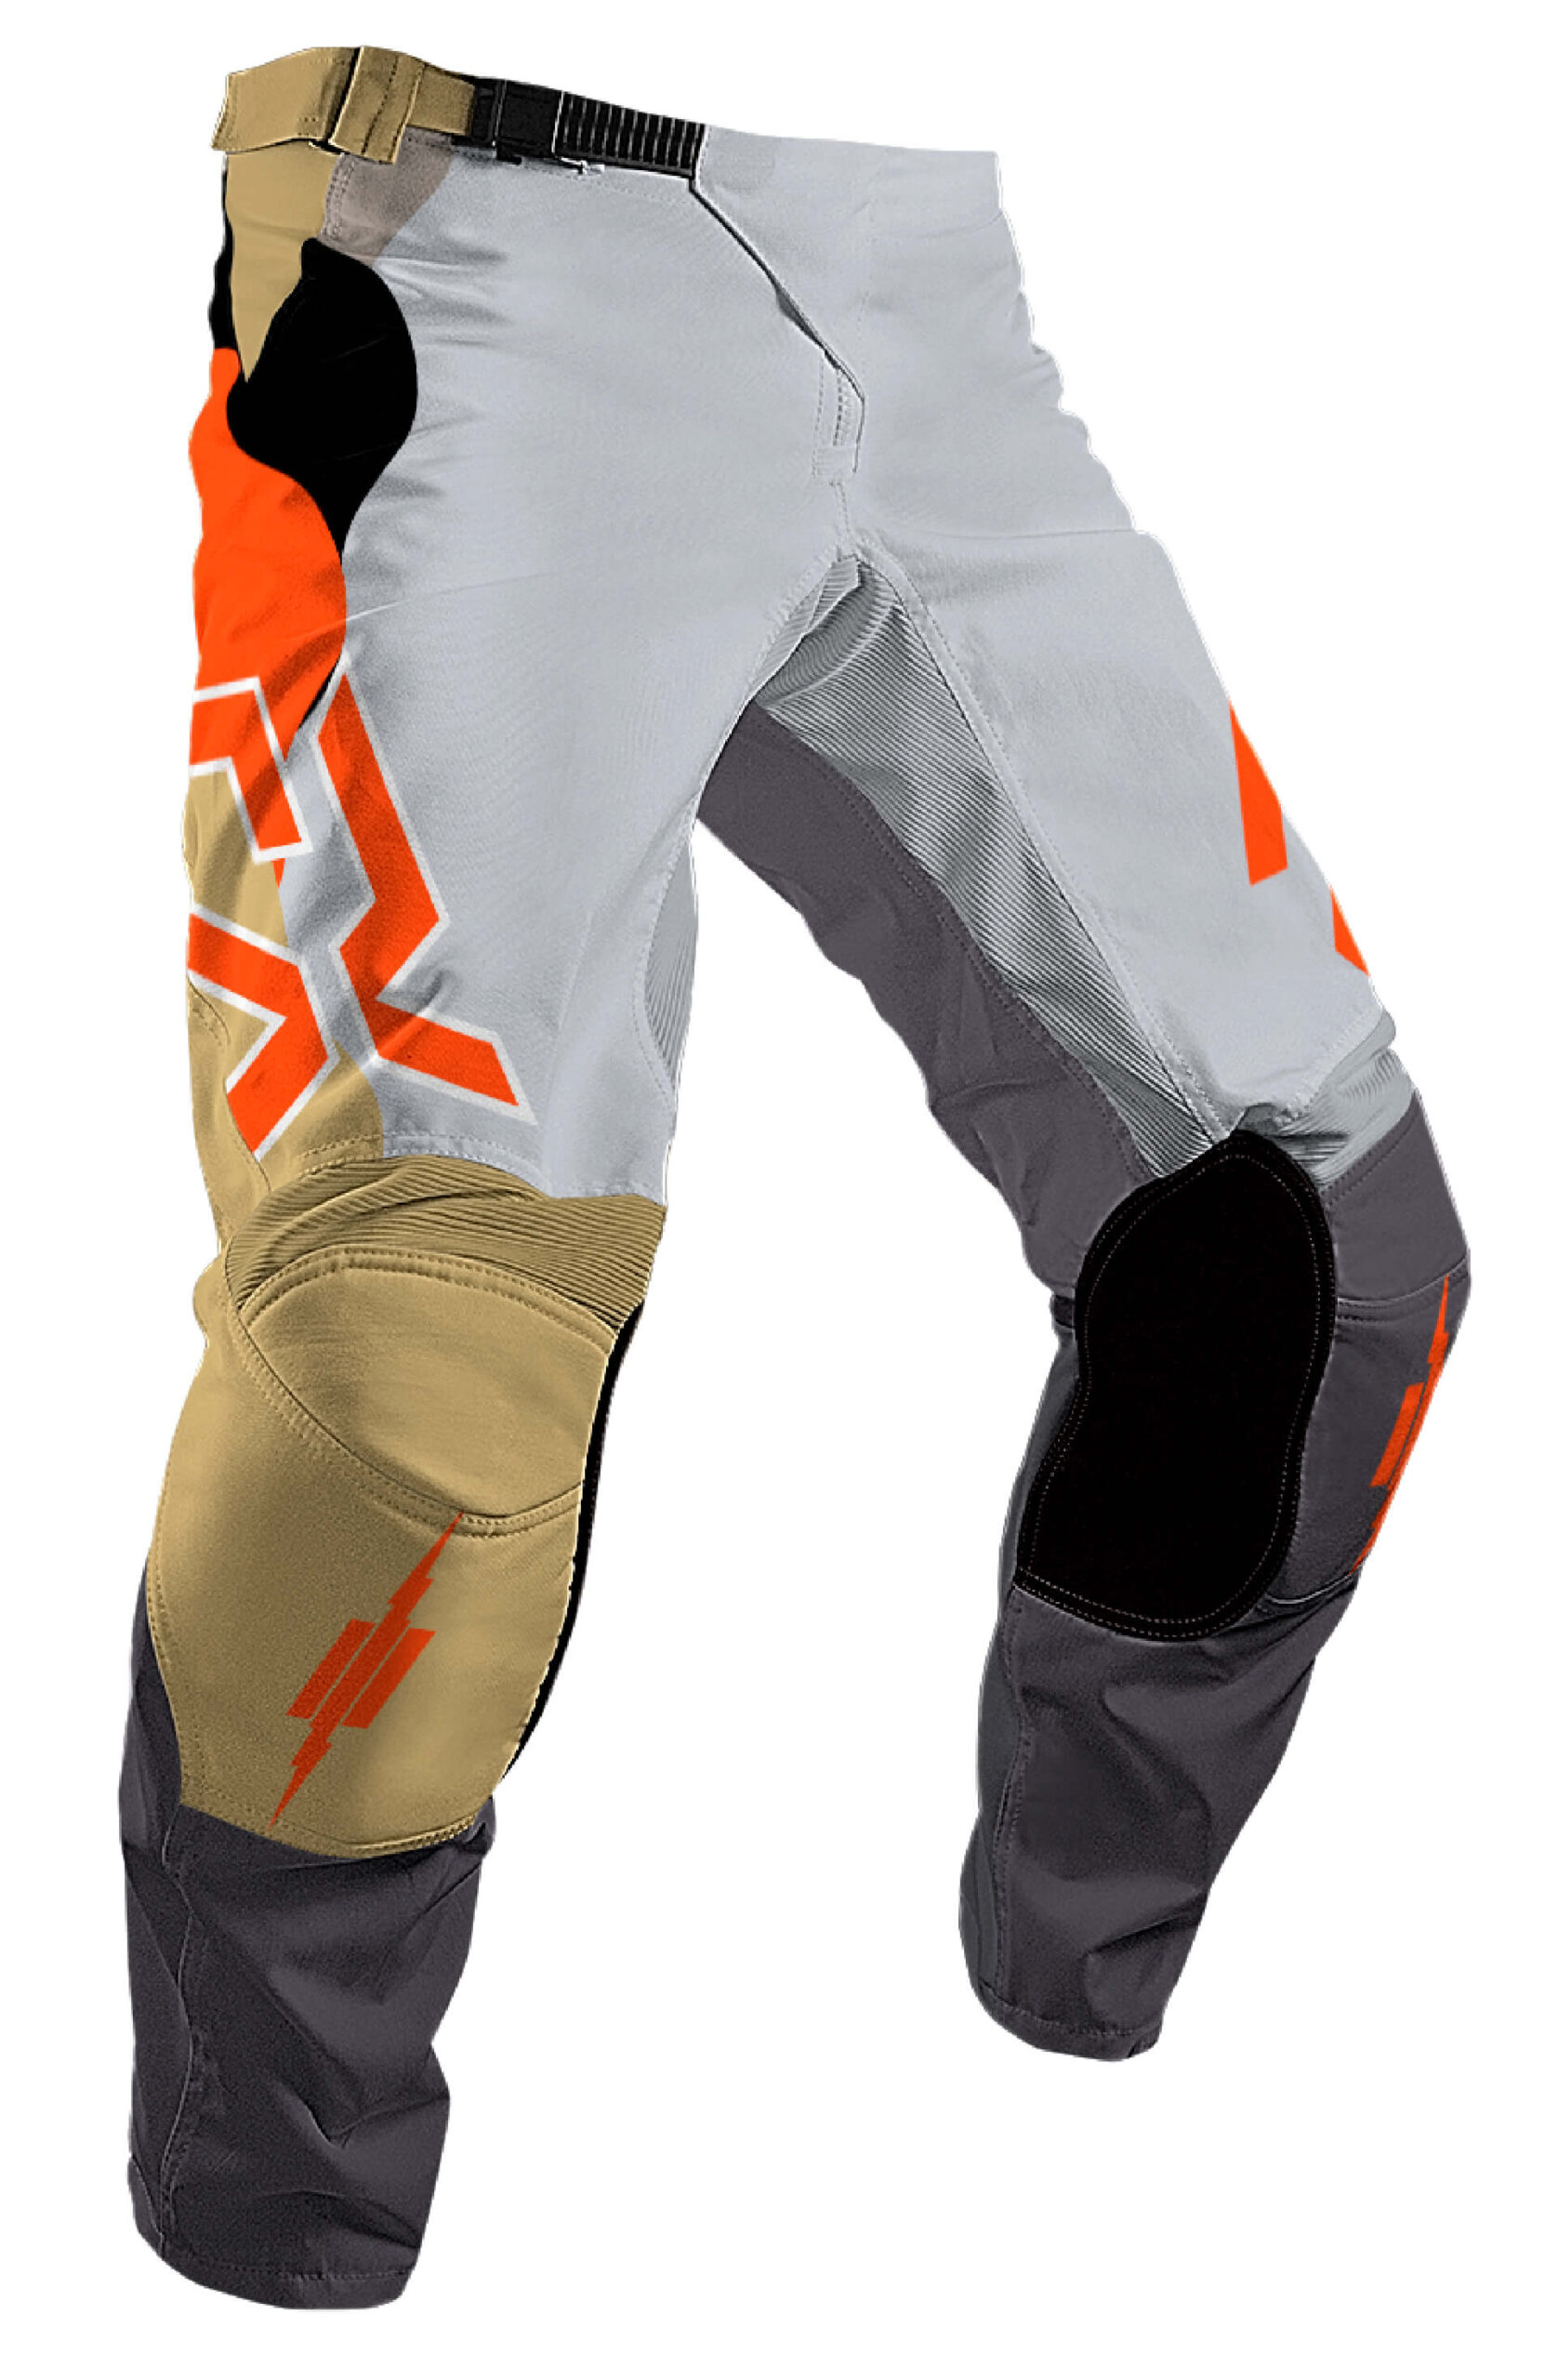 Palette Pants - FX Racing Inc